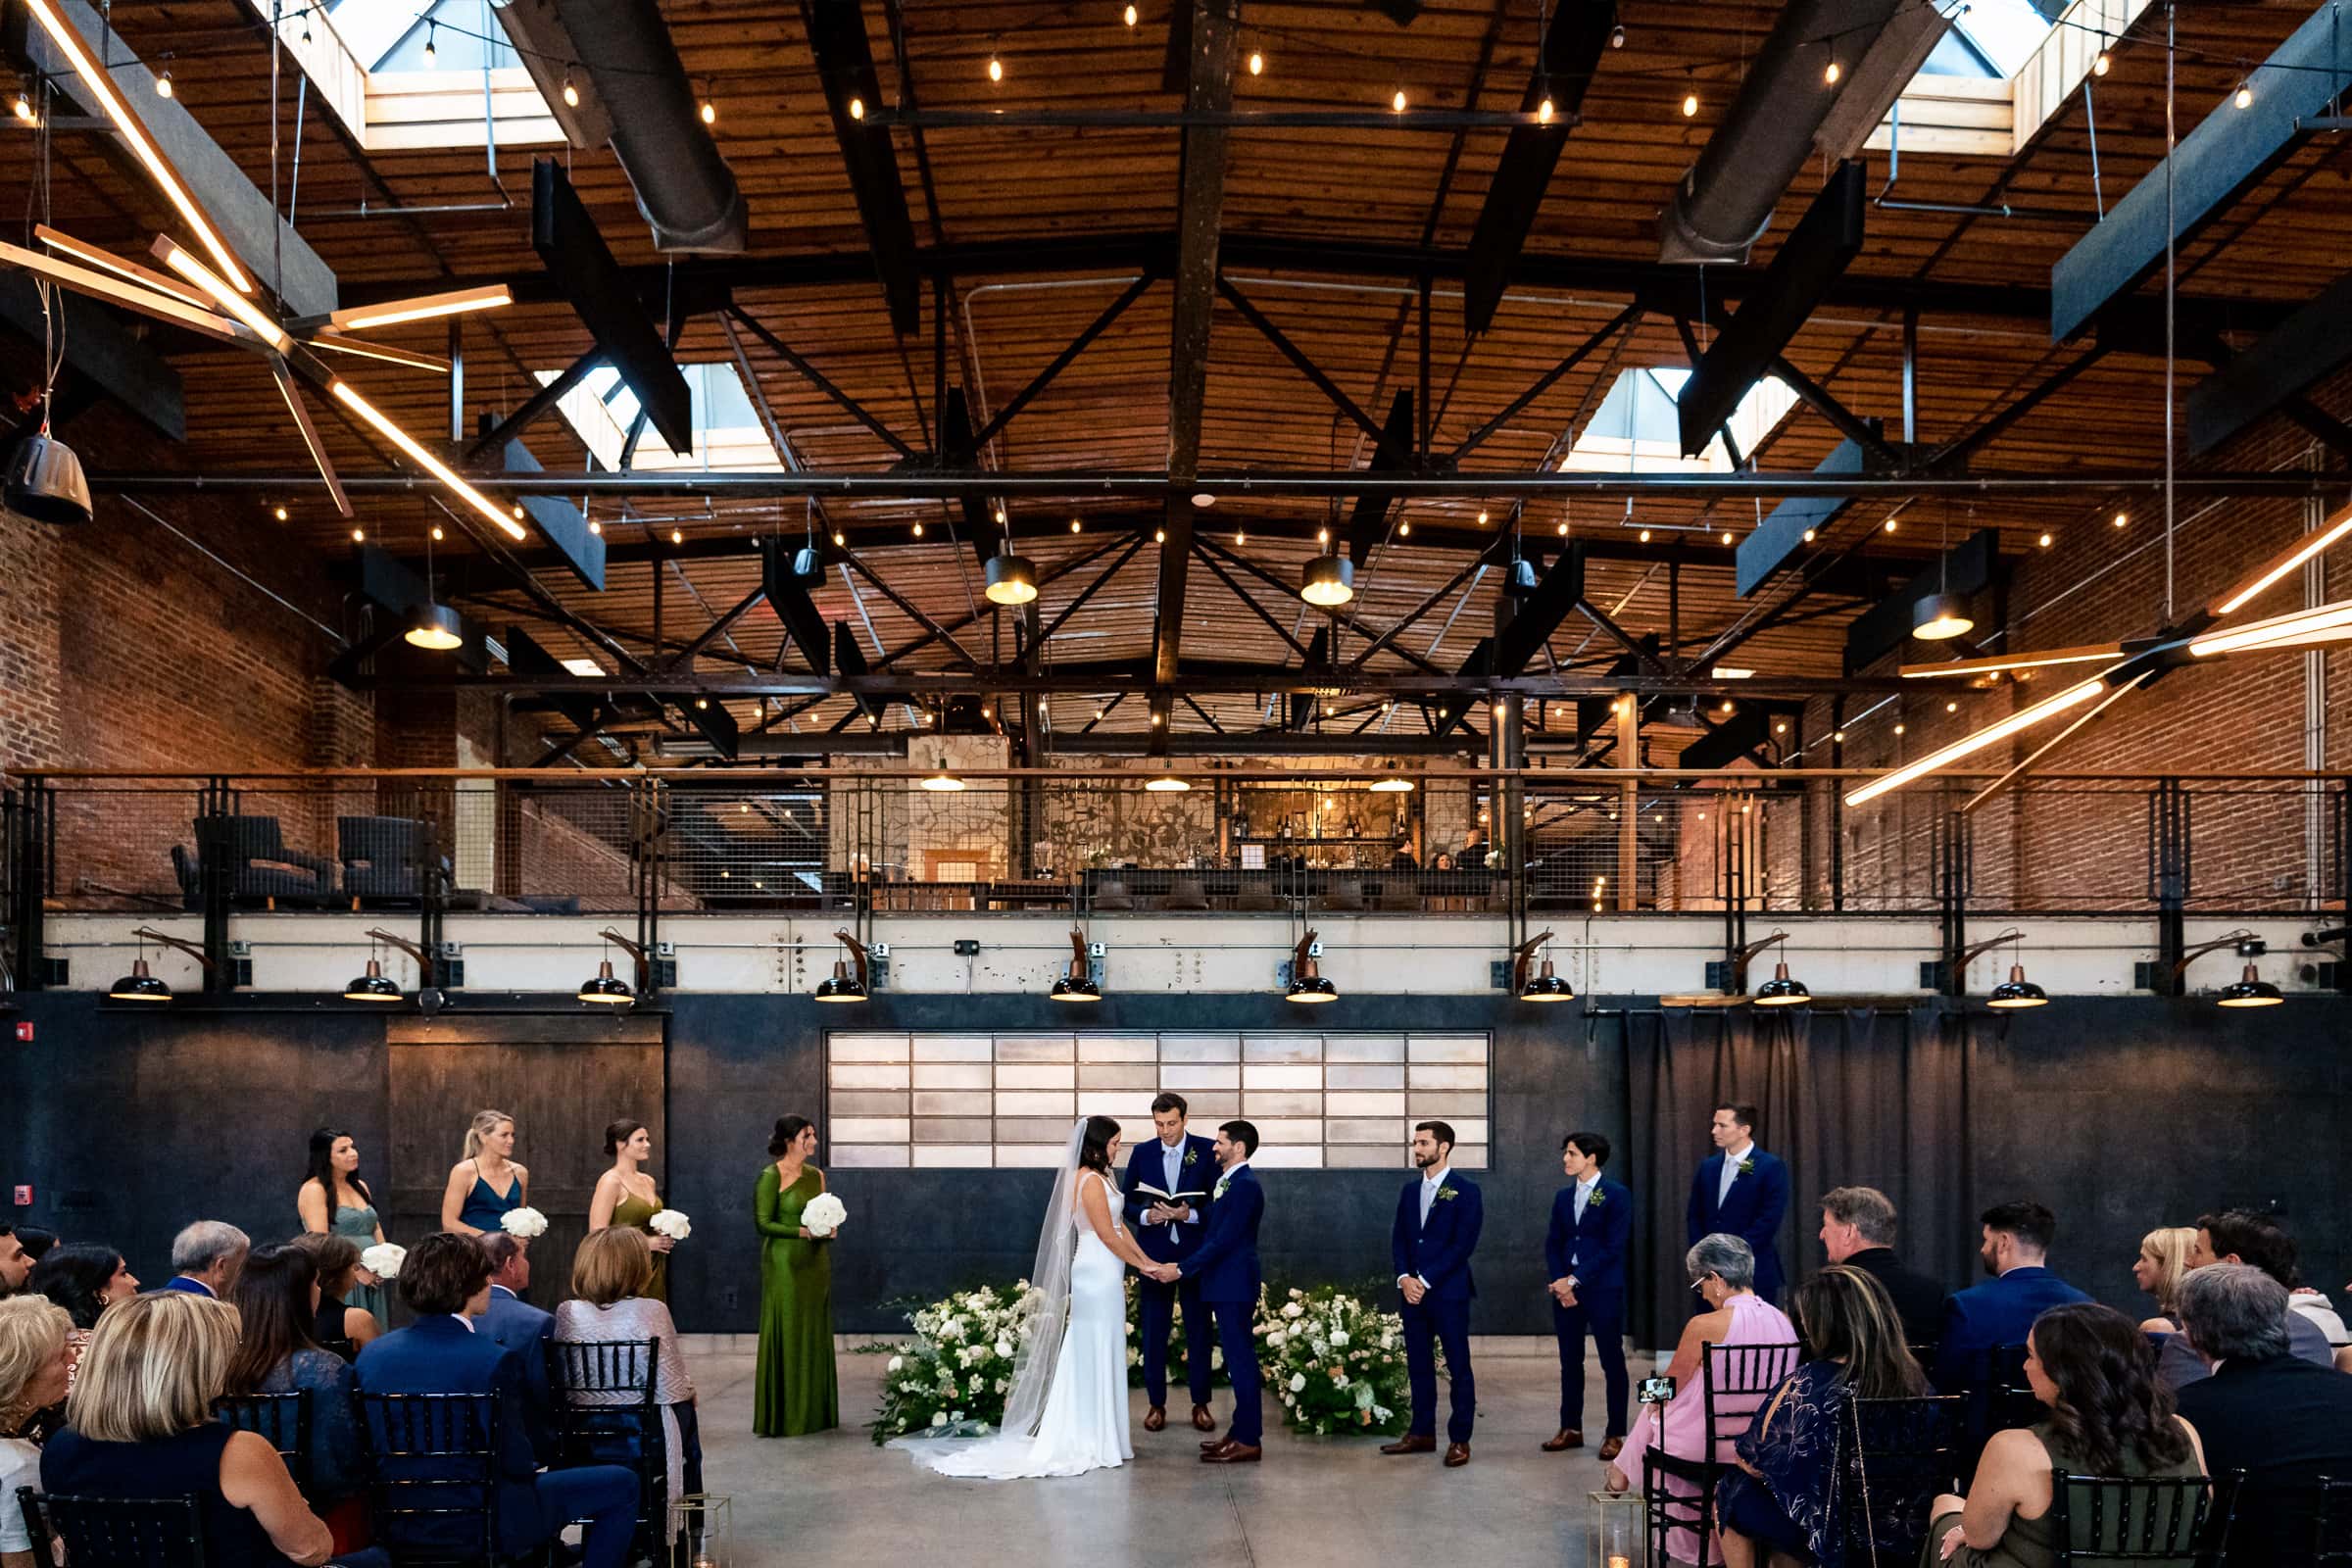 Cadillac Service Garage wedding ceremony | photos by Kivus & Camera